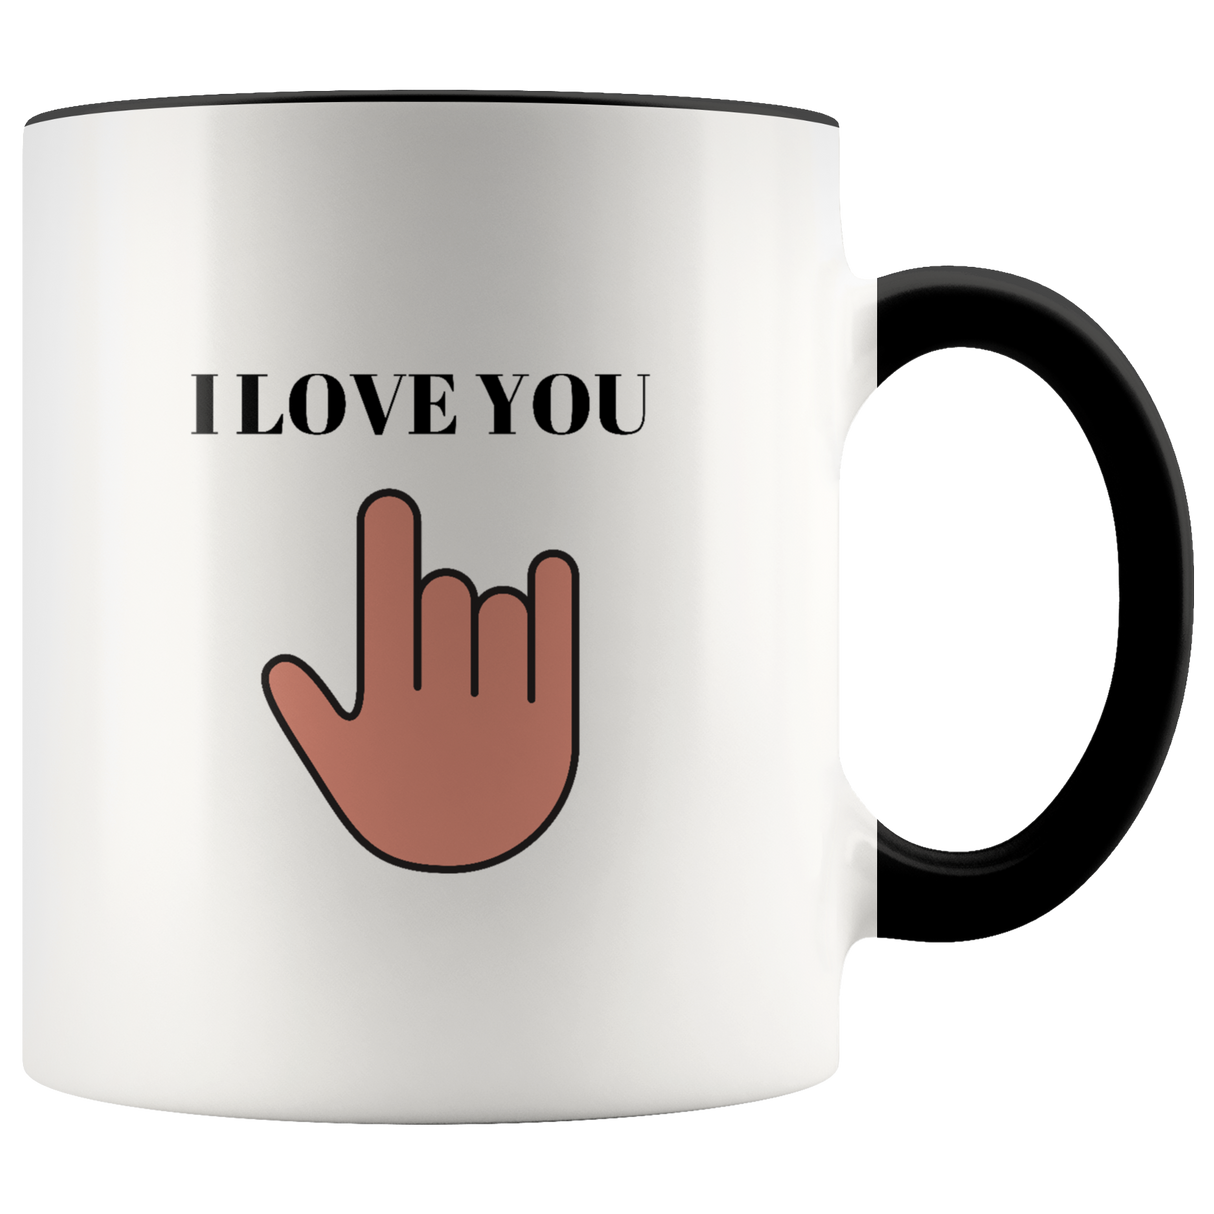 I Love You Mug Ceramic Accent Mug - Black | Shop Sassy Chick